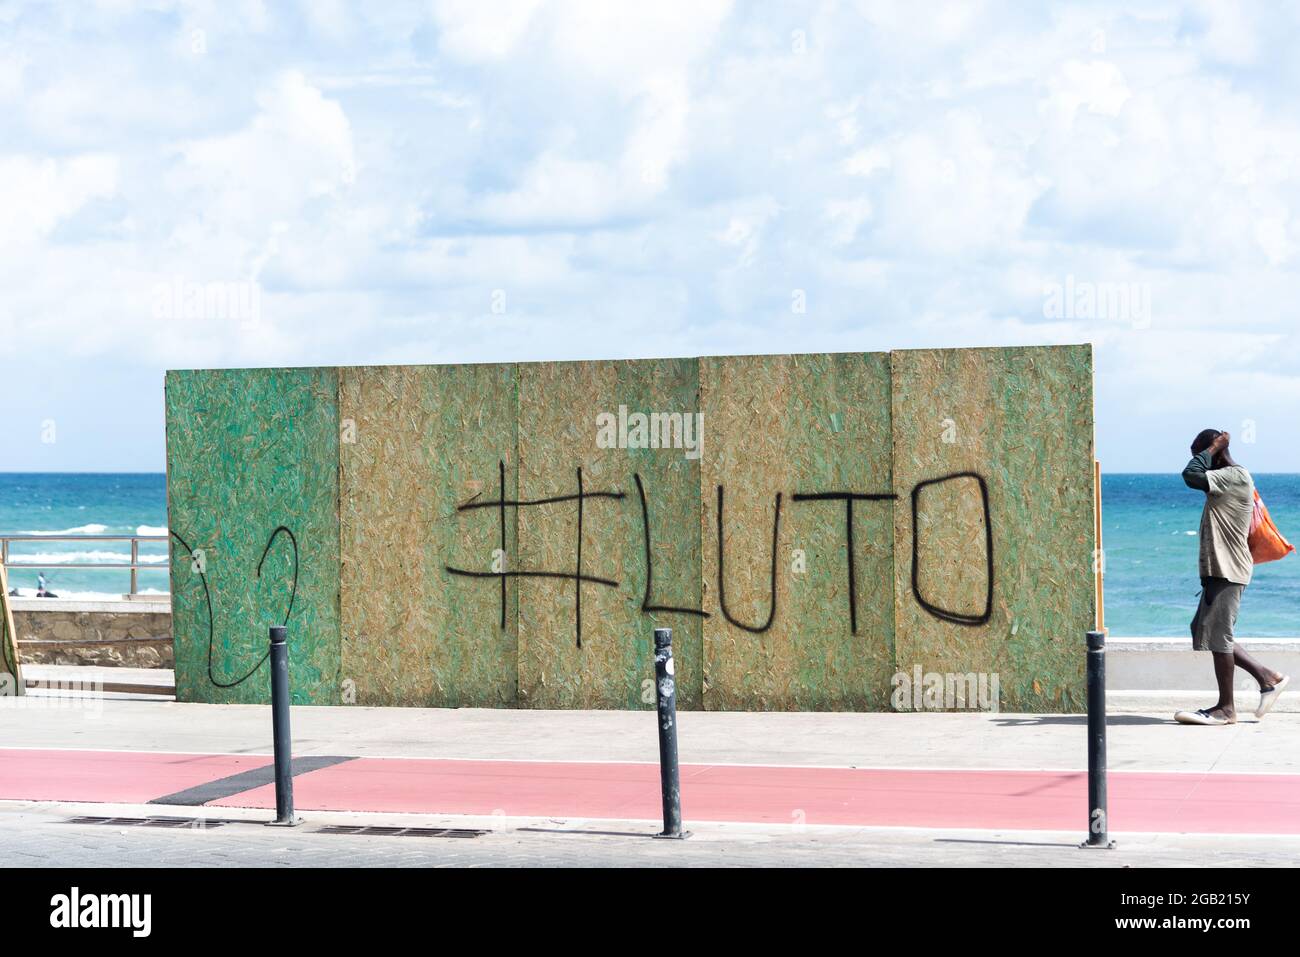 Salvador, Bahia, Brasile - 01 maggio 2021: Vagliando per impedire l'accesso ai graffiti della spiaggia con la parola 'Lubo', in onore delle migliaia di persone kille Foto Stock